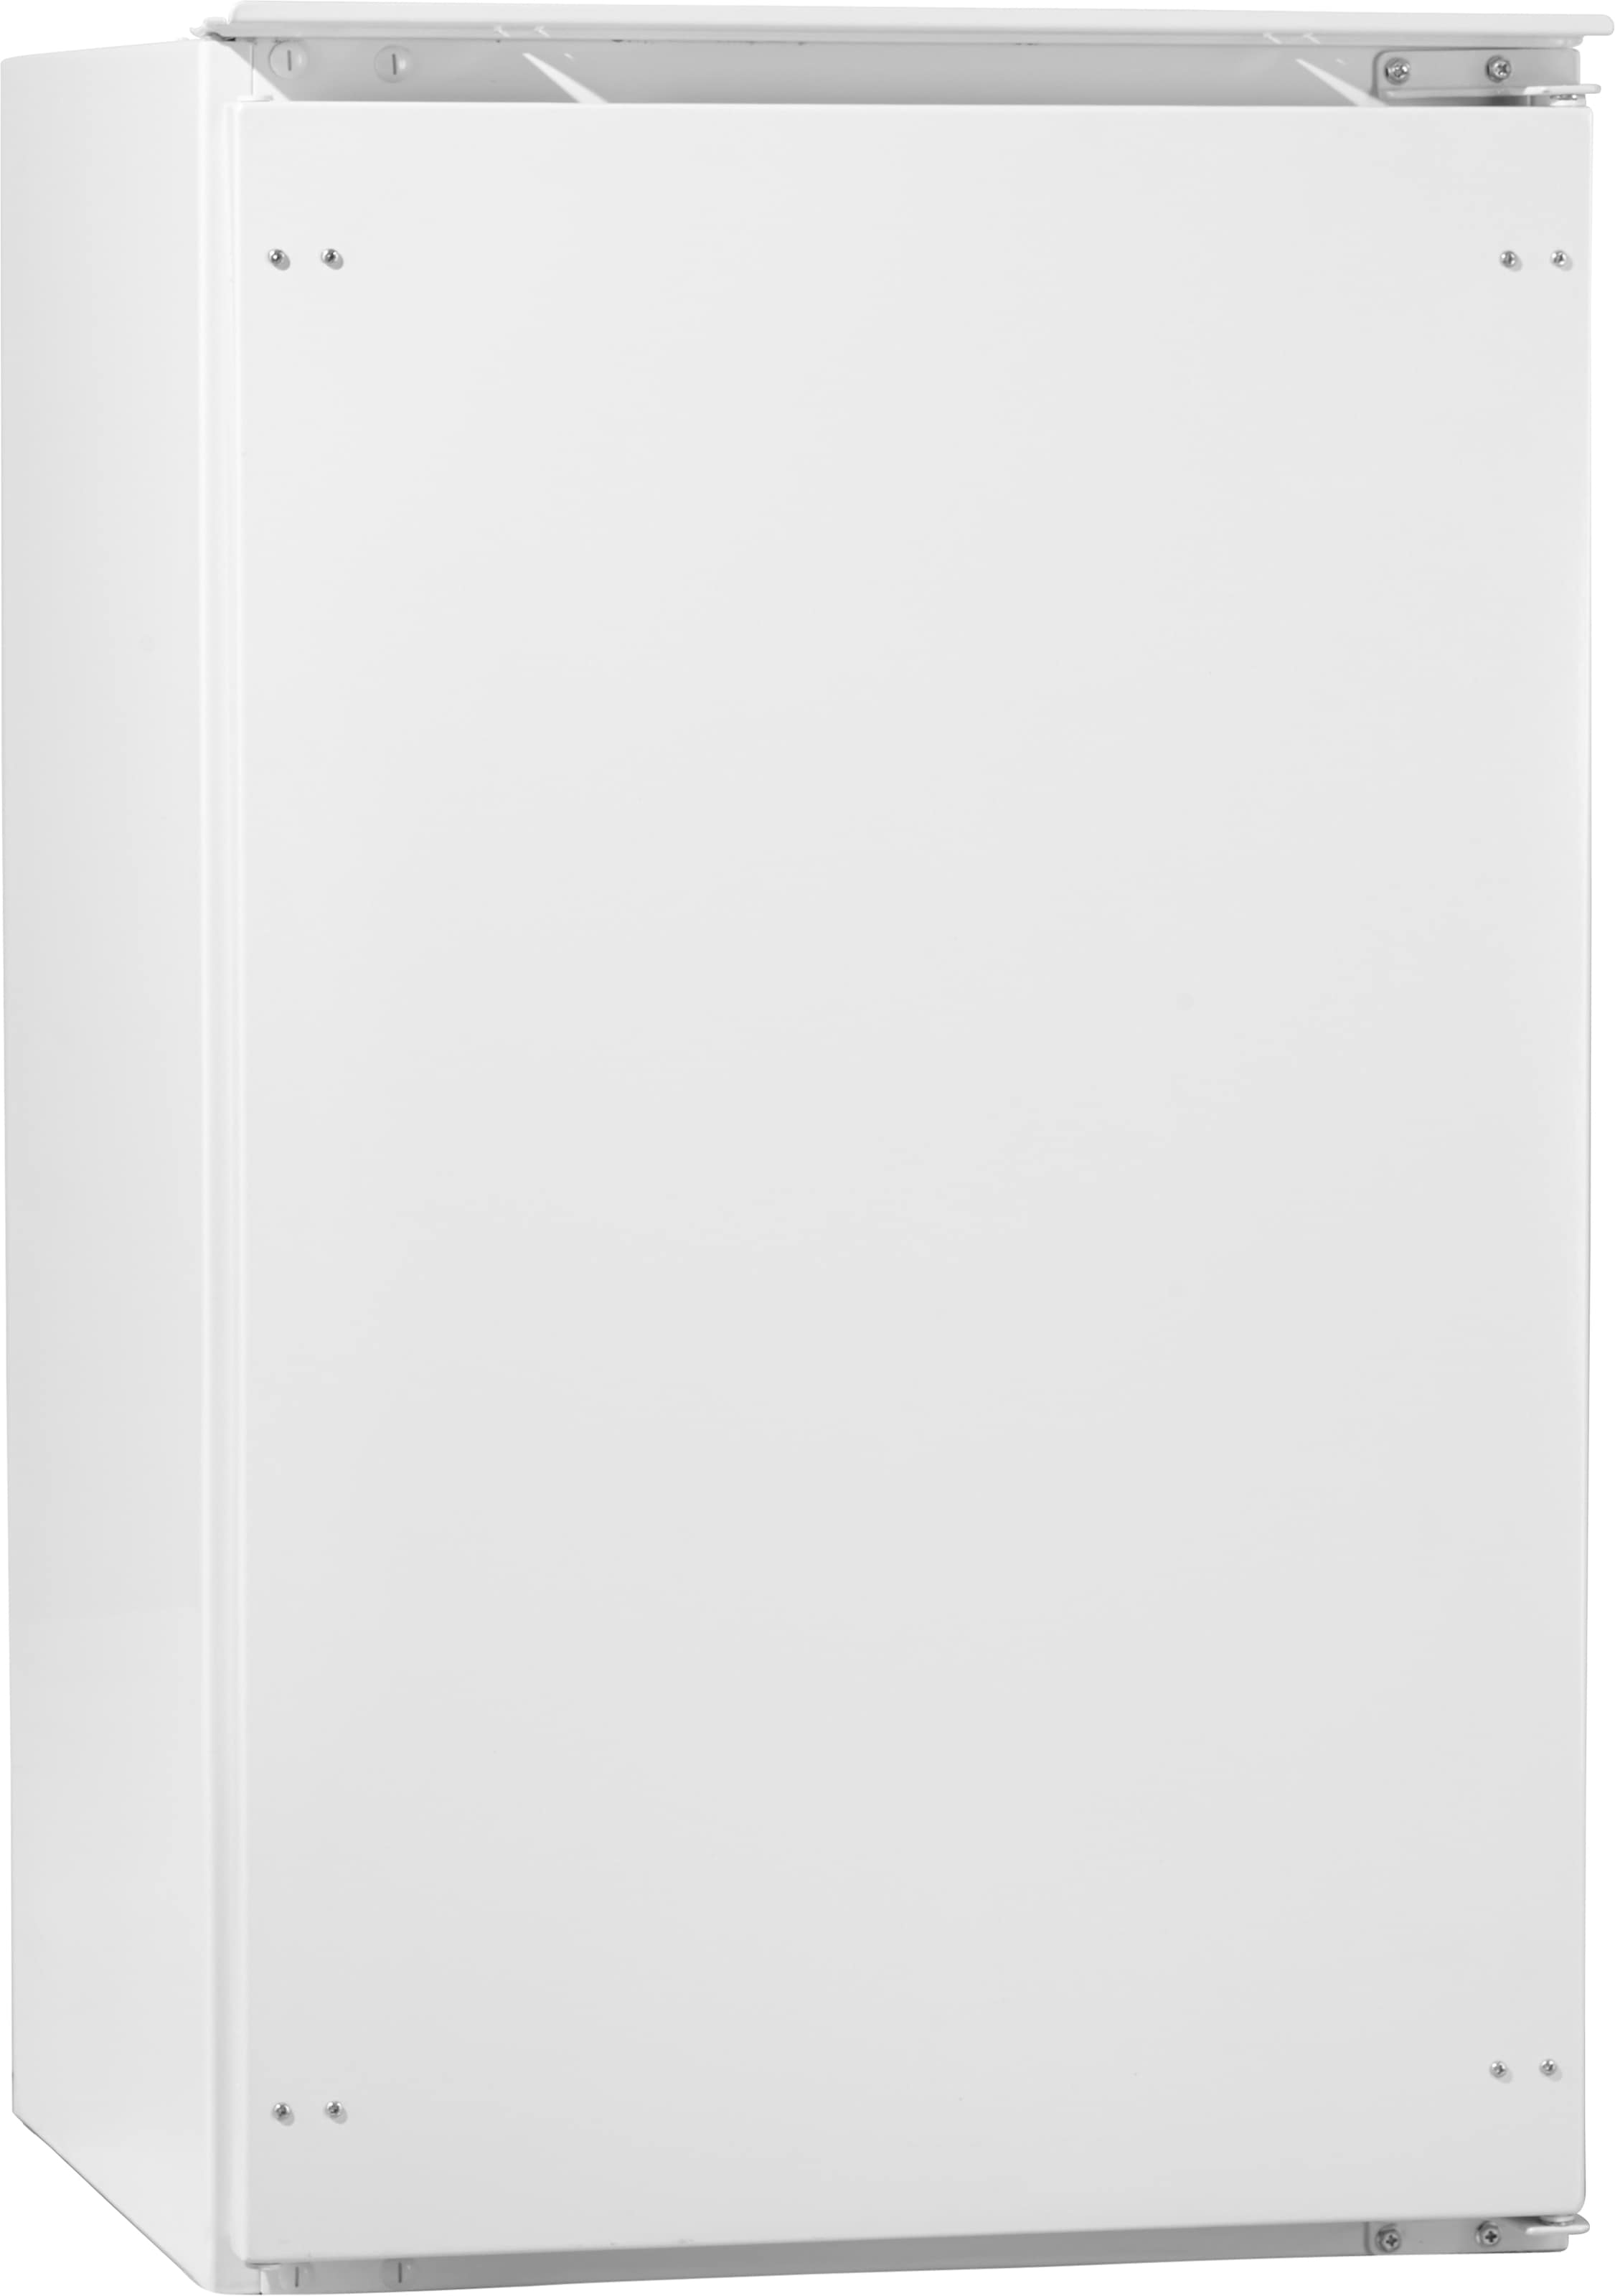 Hanseatic Einbaukühlschrank, HEKS8854F, 88 cm hoch, 54 cm breit, 88 cm hoch  jetzt im OTTO Online Shop